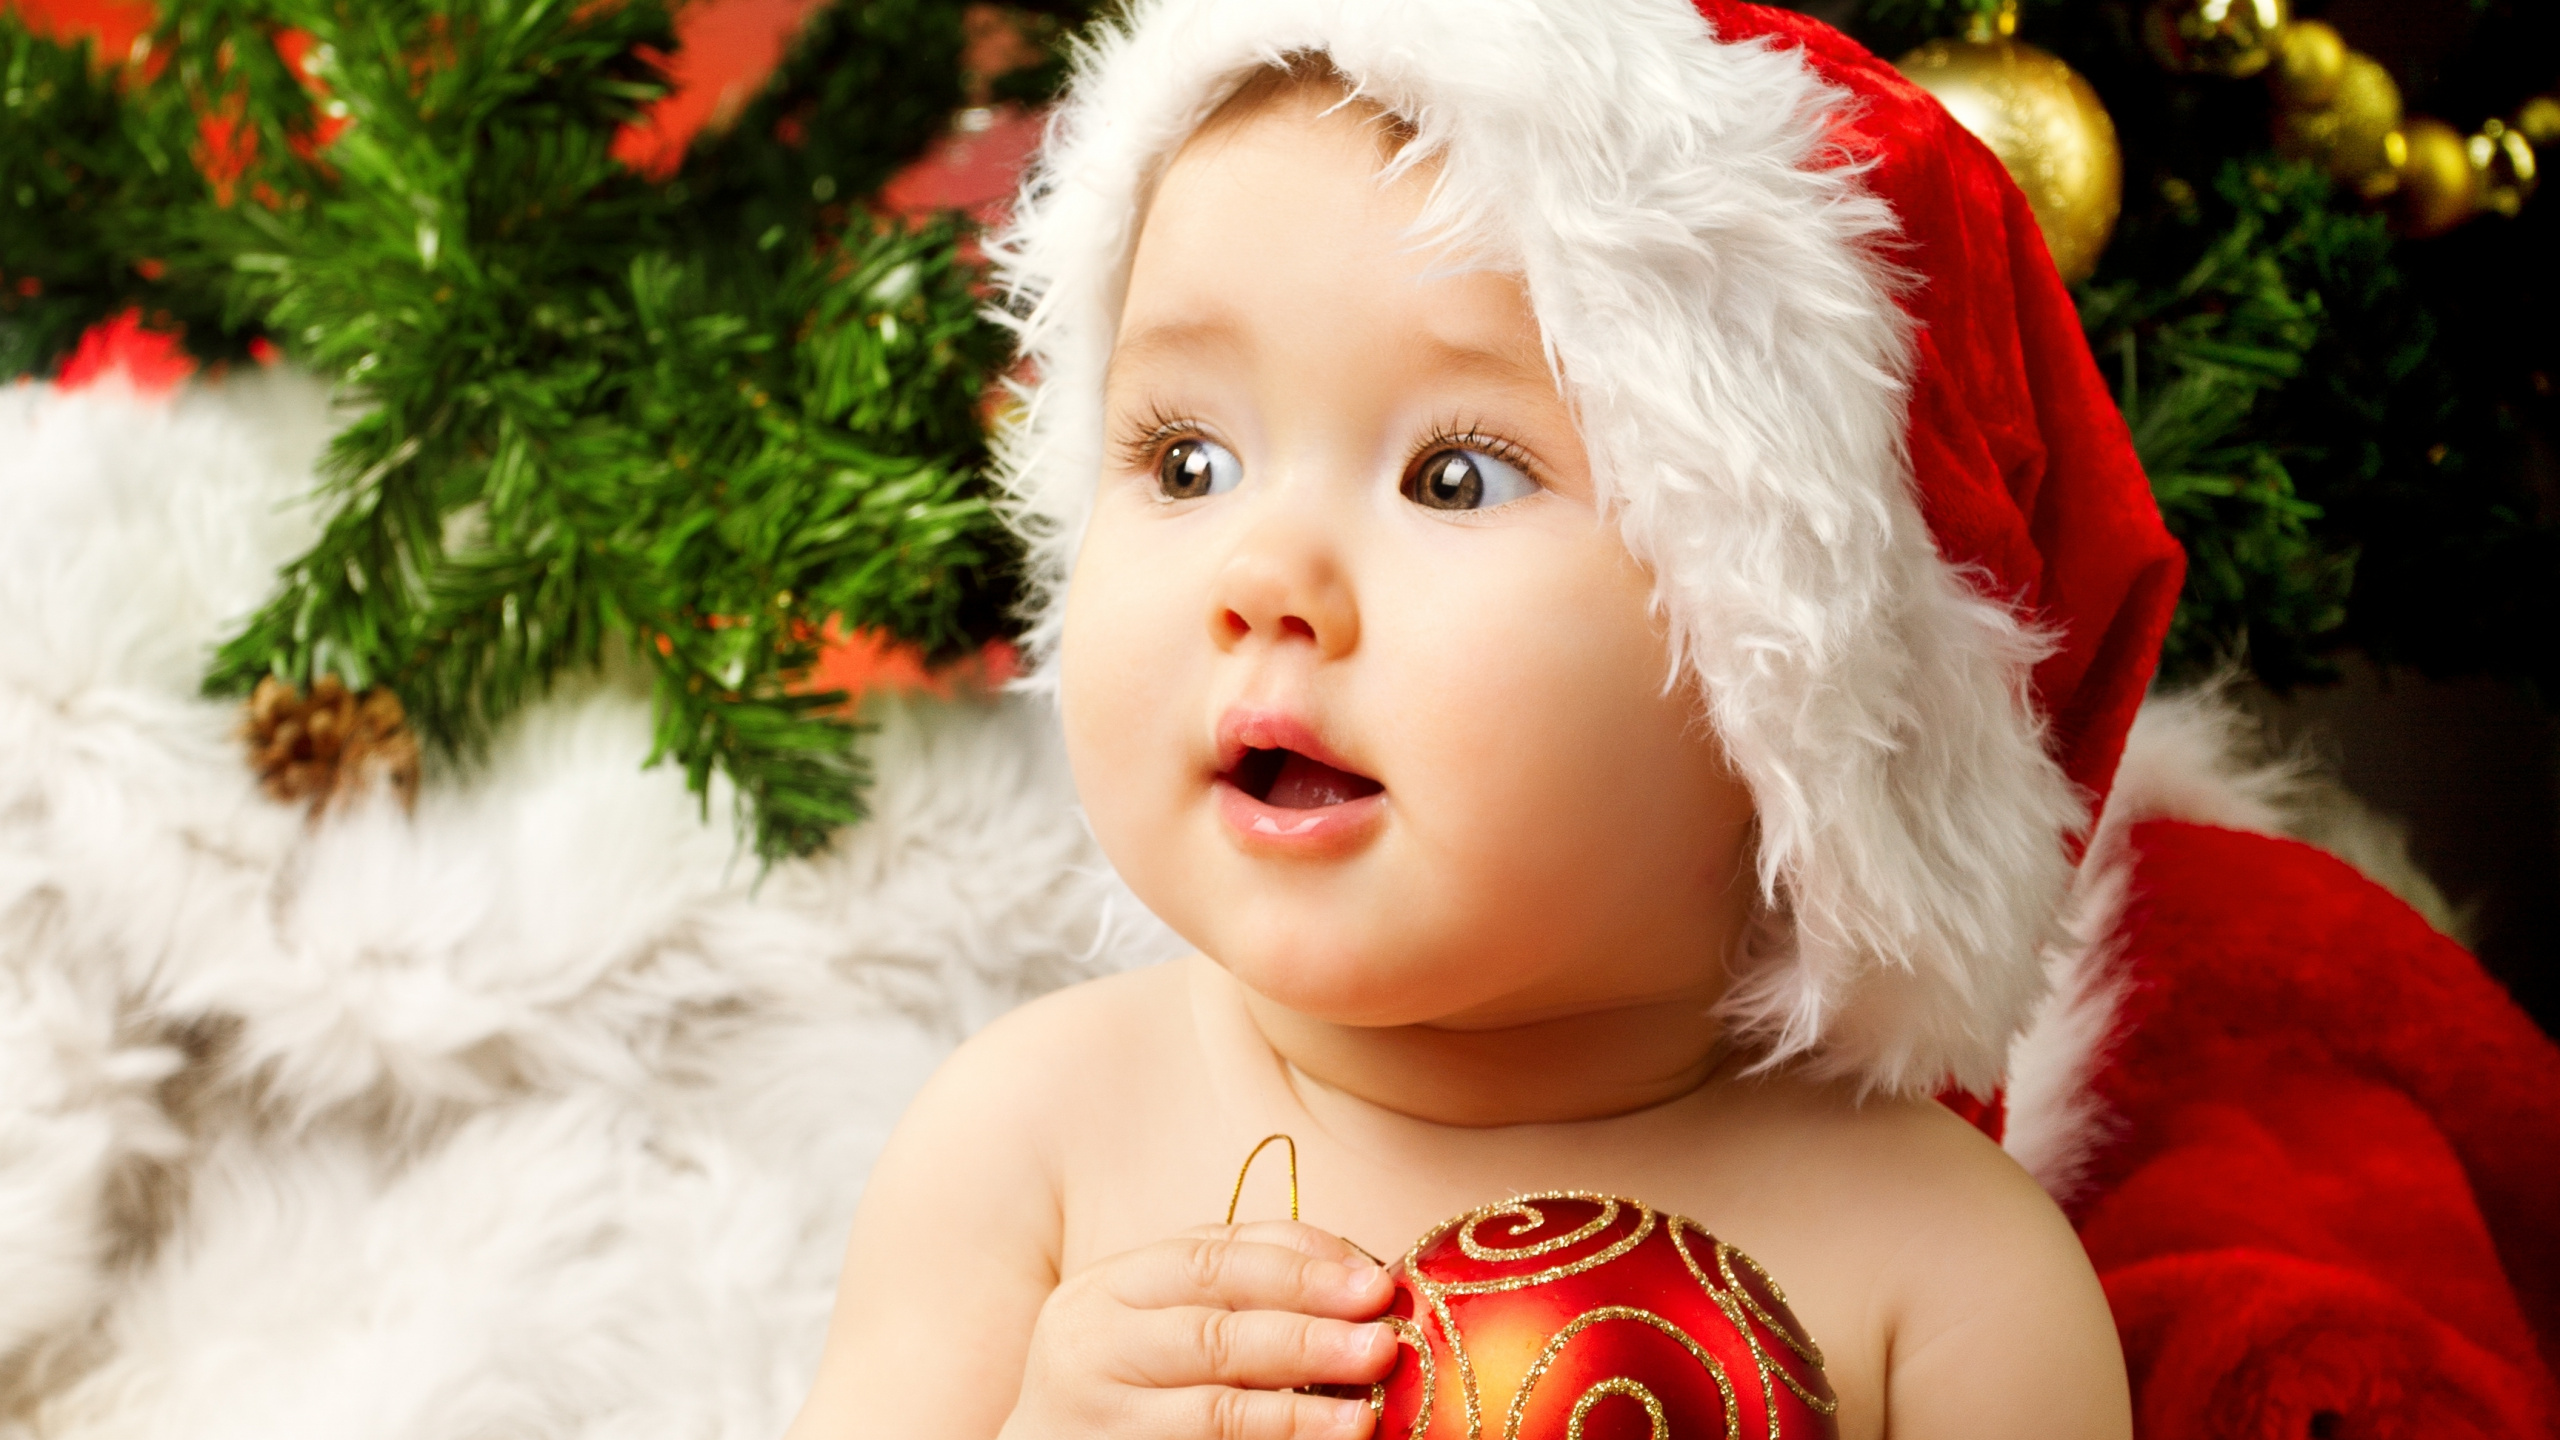 Weihnachten, Säugling, Niedlichkeit, Kind, Christmas Ornament. Wallpaper in 2560x1440 Resolution